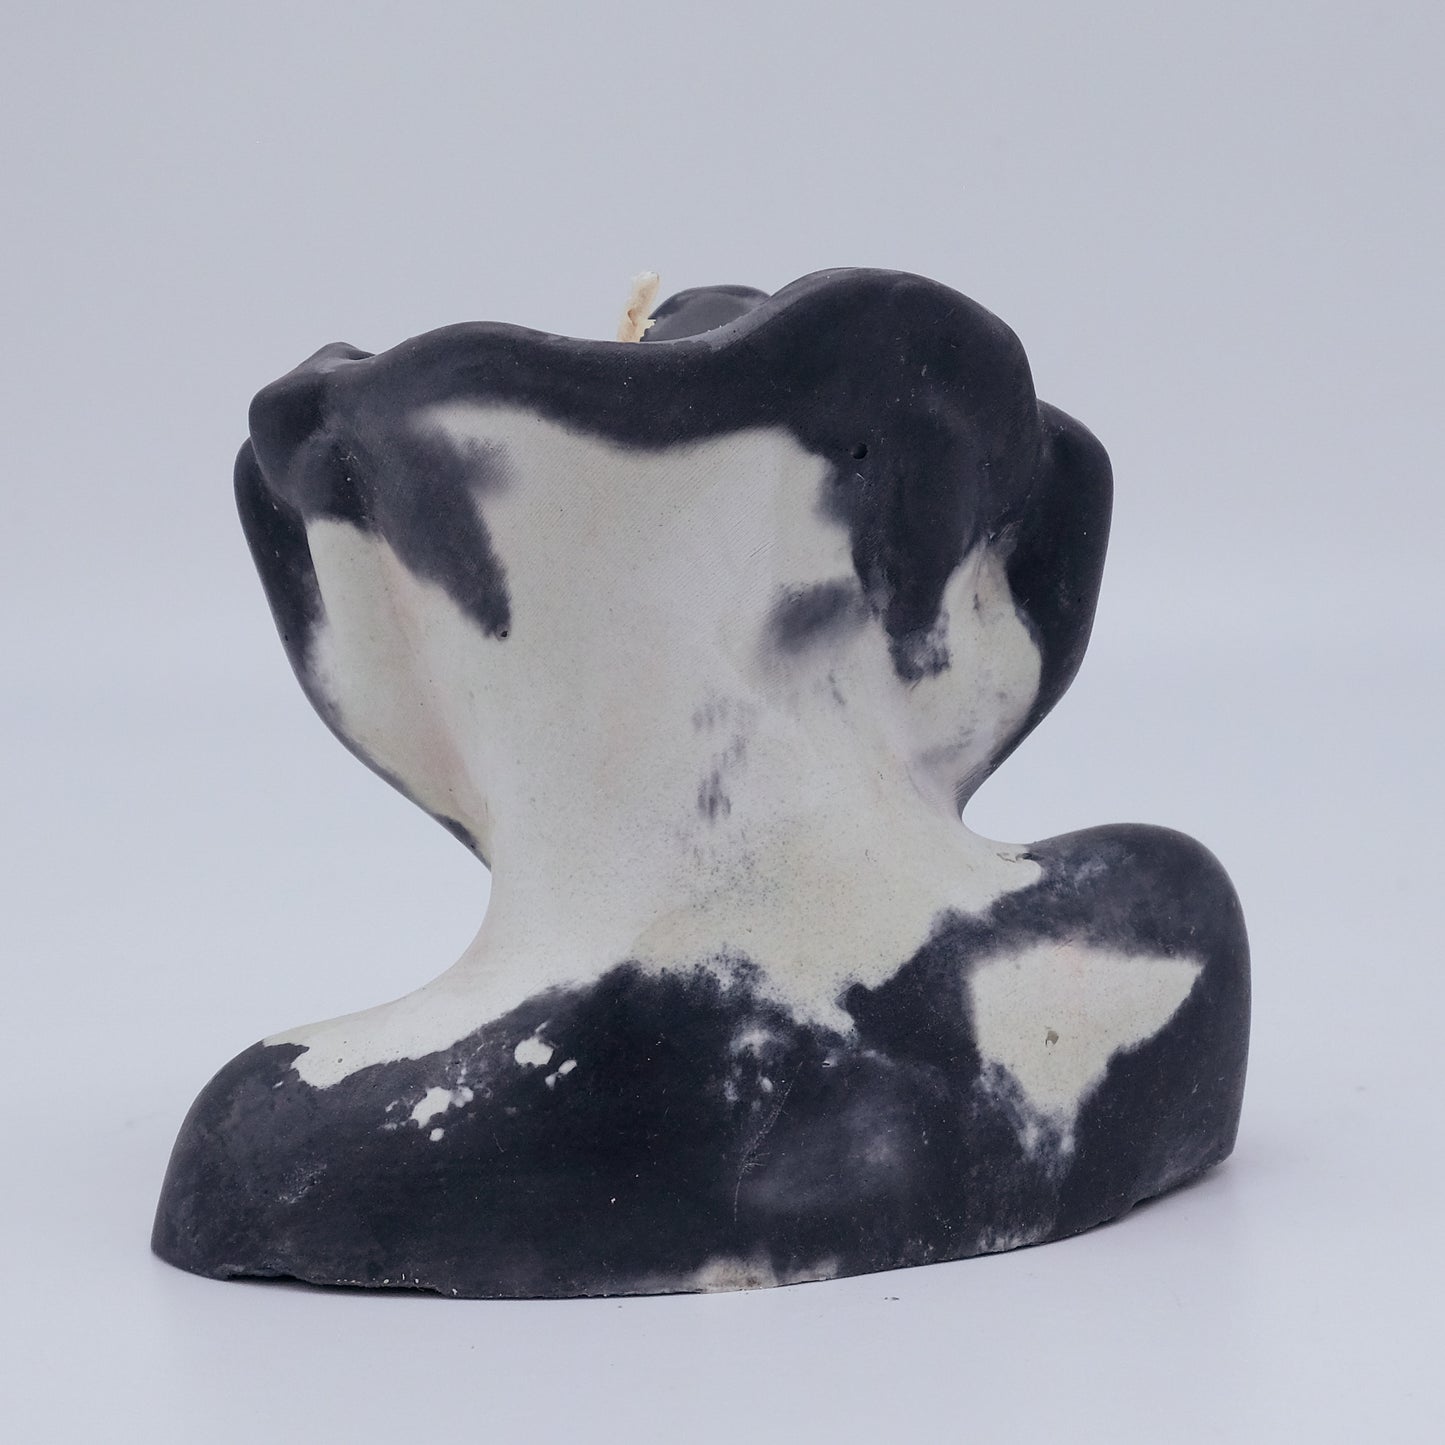 Concrete Candle Decor - Gray Vessel/ Tea Blossom - White Tea & Thyme Scent